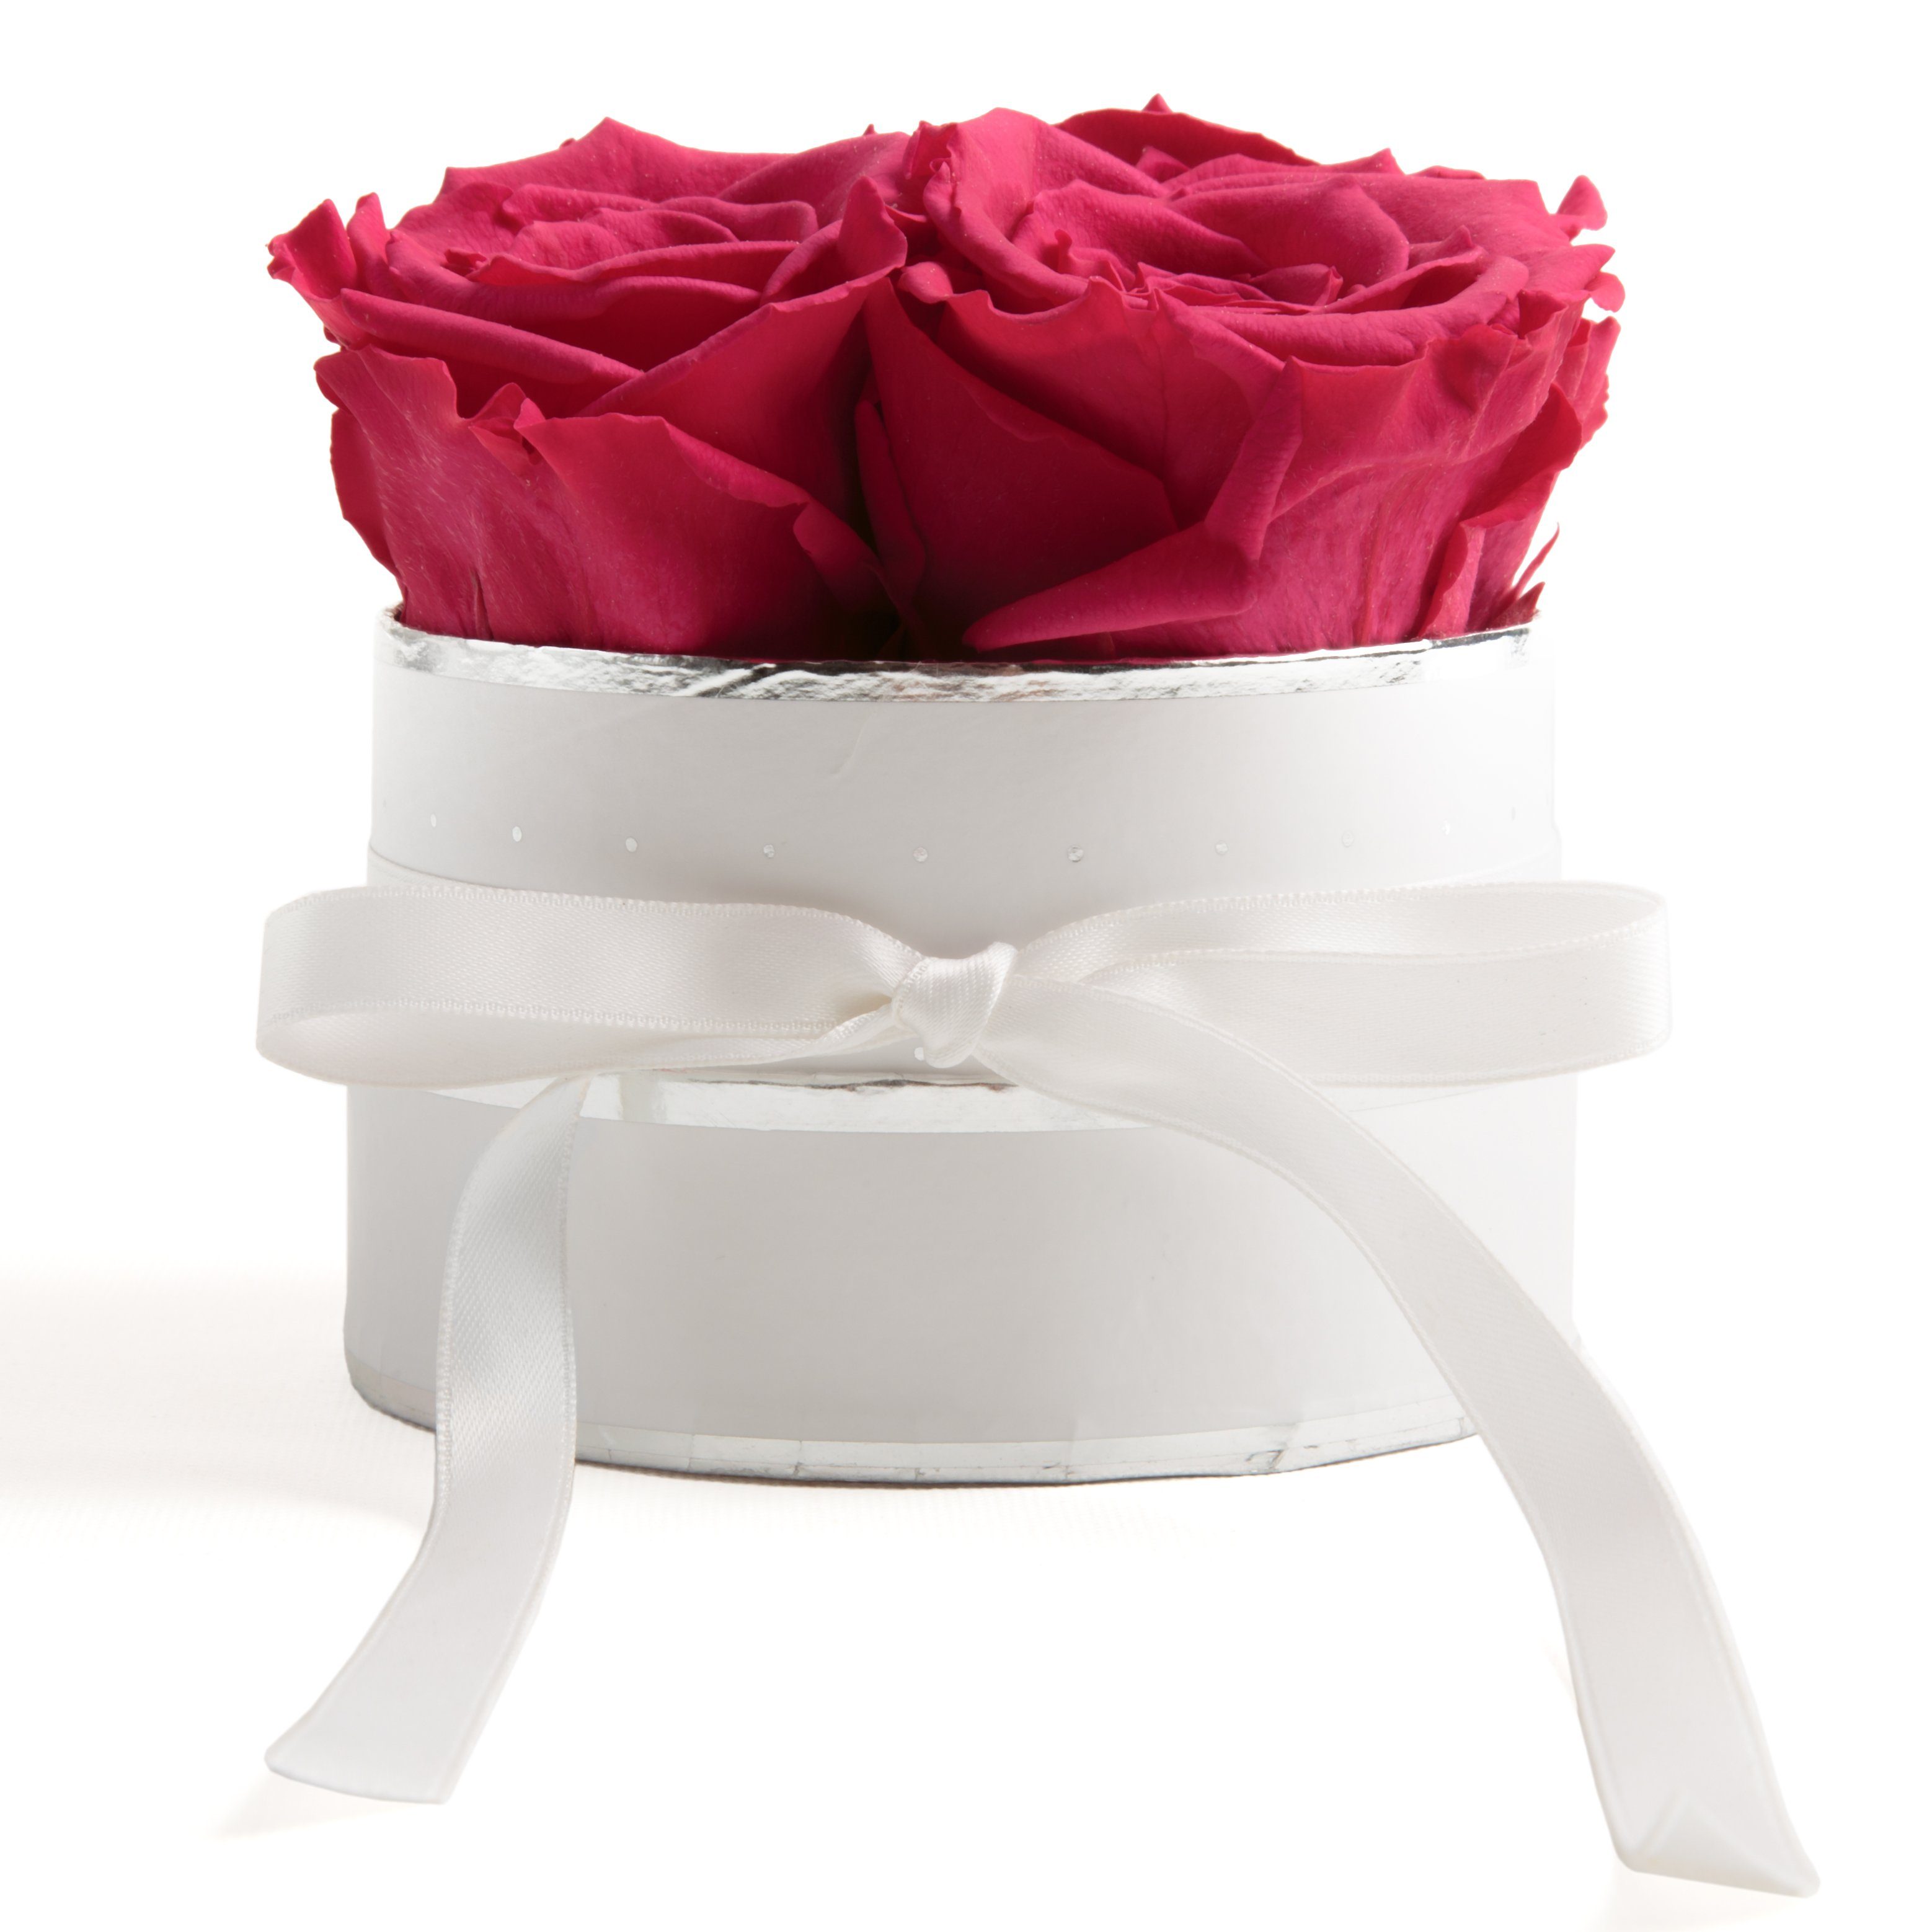 Kunstblume Infinity Rosenbox weiß rund 4 konservierte Rosen inklusiv Geschenkbox Rose, ROSEMARIE SCHULZ Heidelberg, Höhe 10 cm, echte Rosen haltbar 3 Jahre Pink